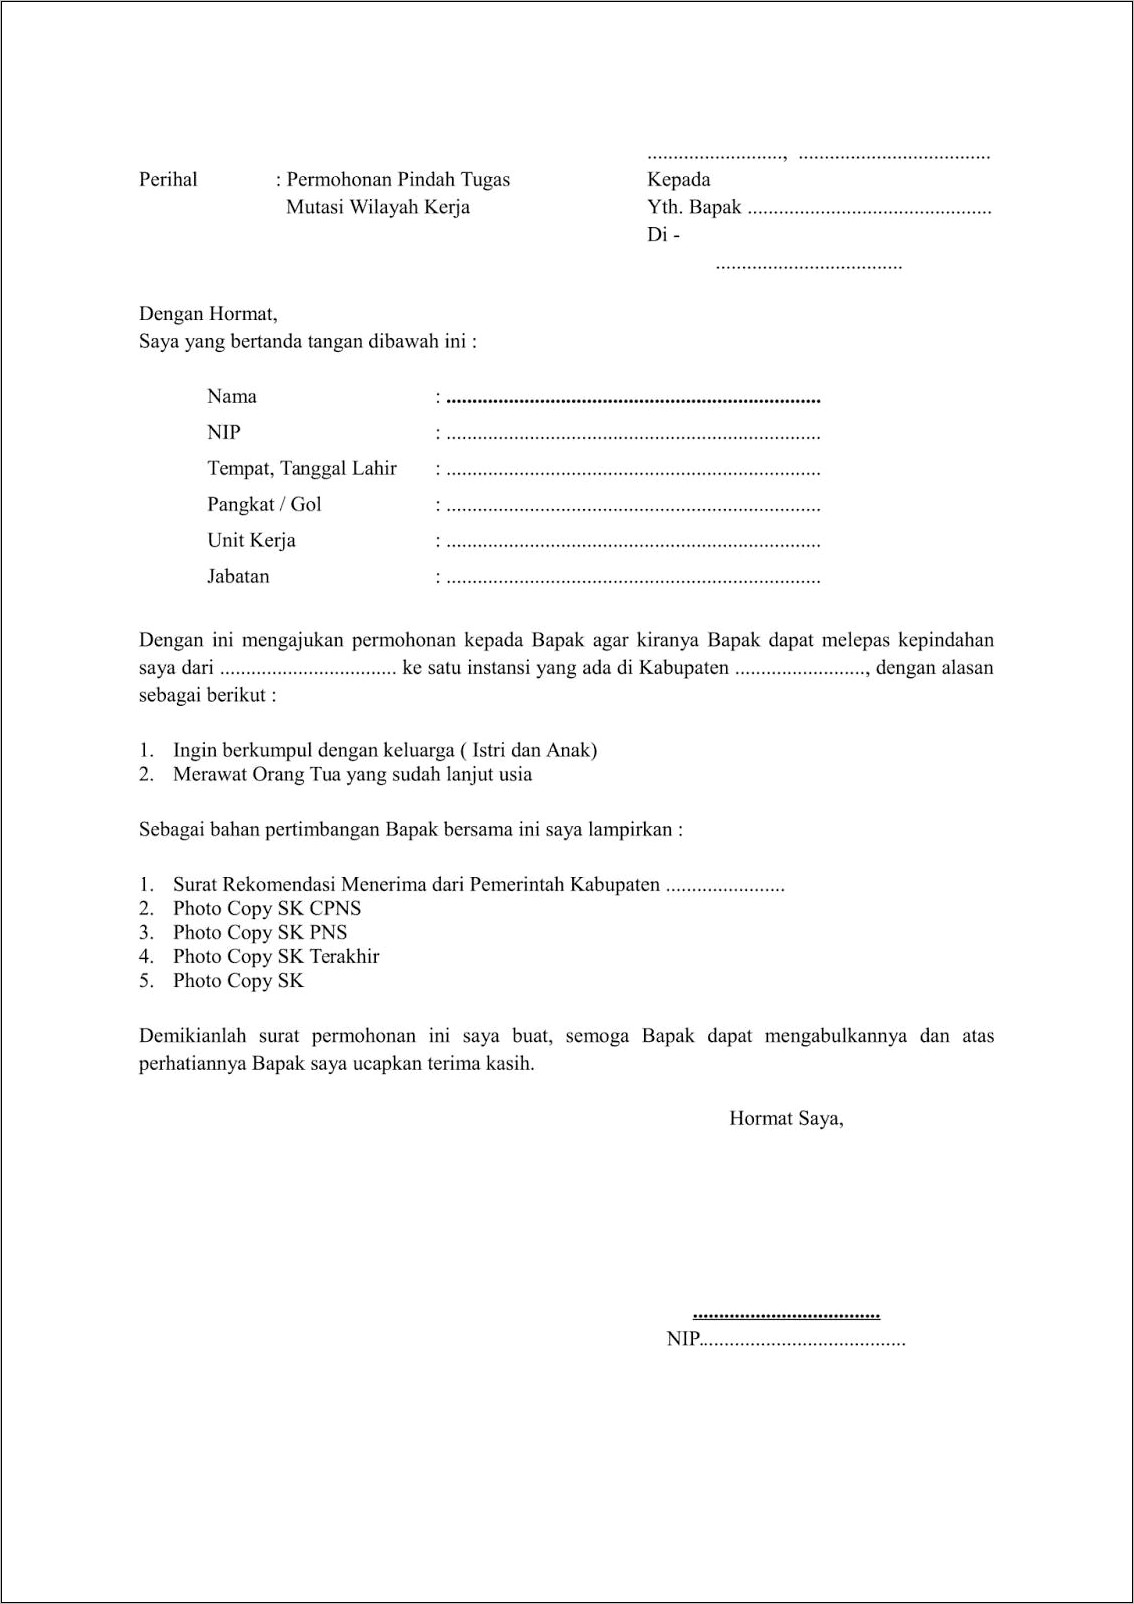 Download Contoh Surat Permohonan Pindah Tugas Sekolah